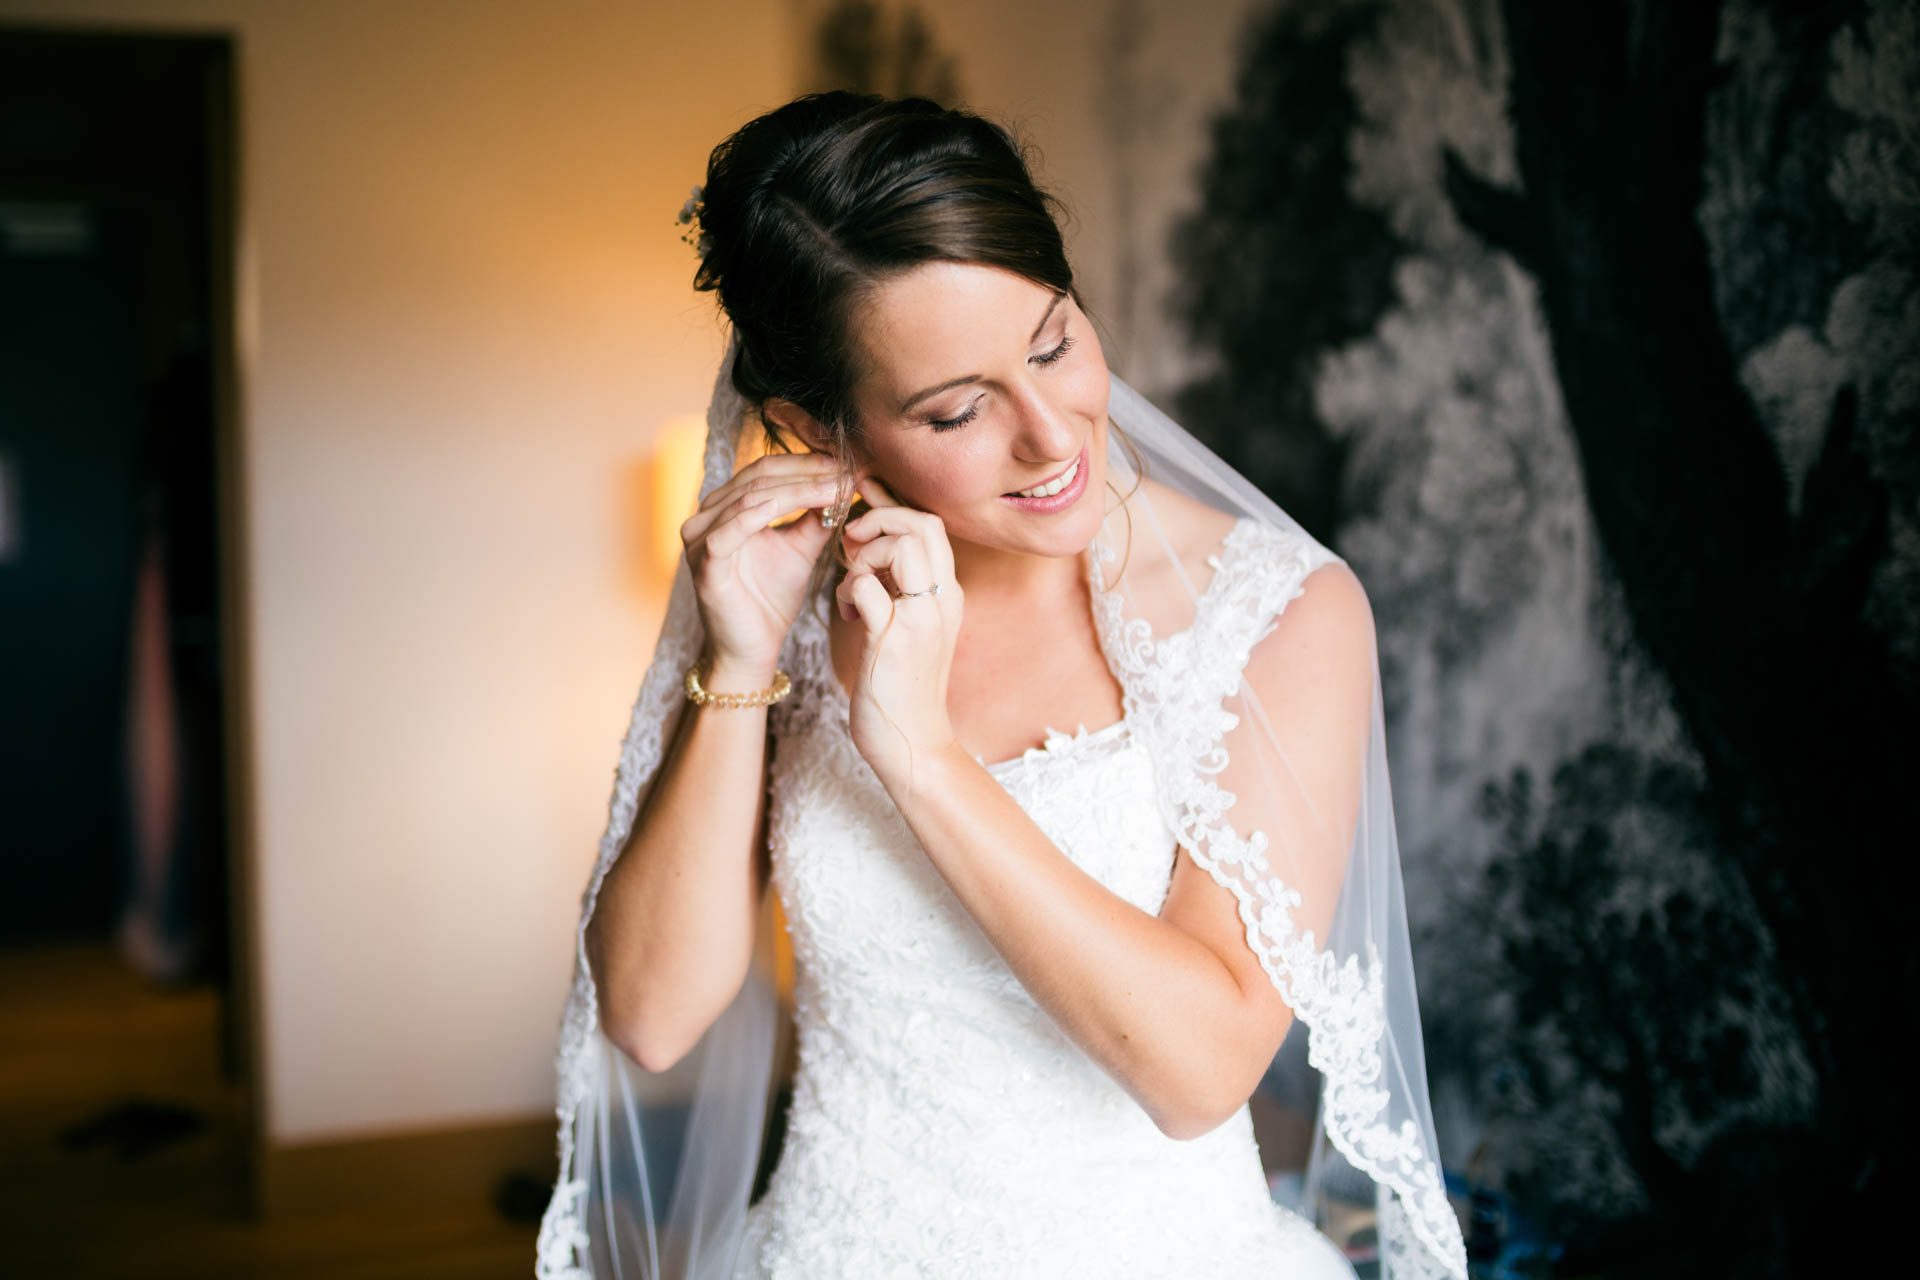 Die Braut beim getting Ready am Morgen der Hochzeit im Hotelzimmer im Taunus, als sie sich Ohrringe anlegt.